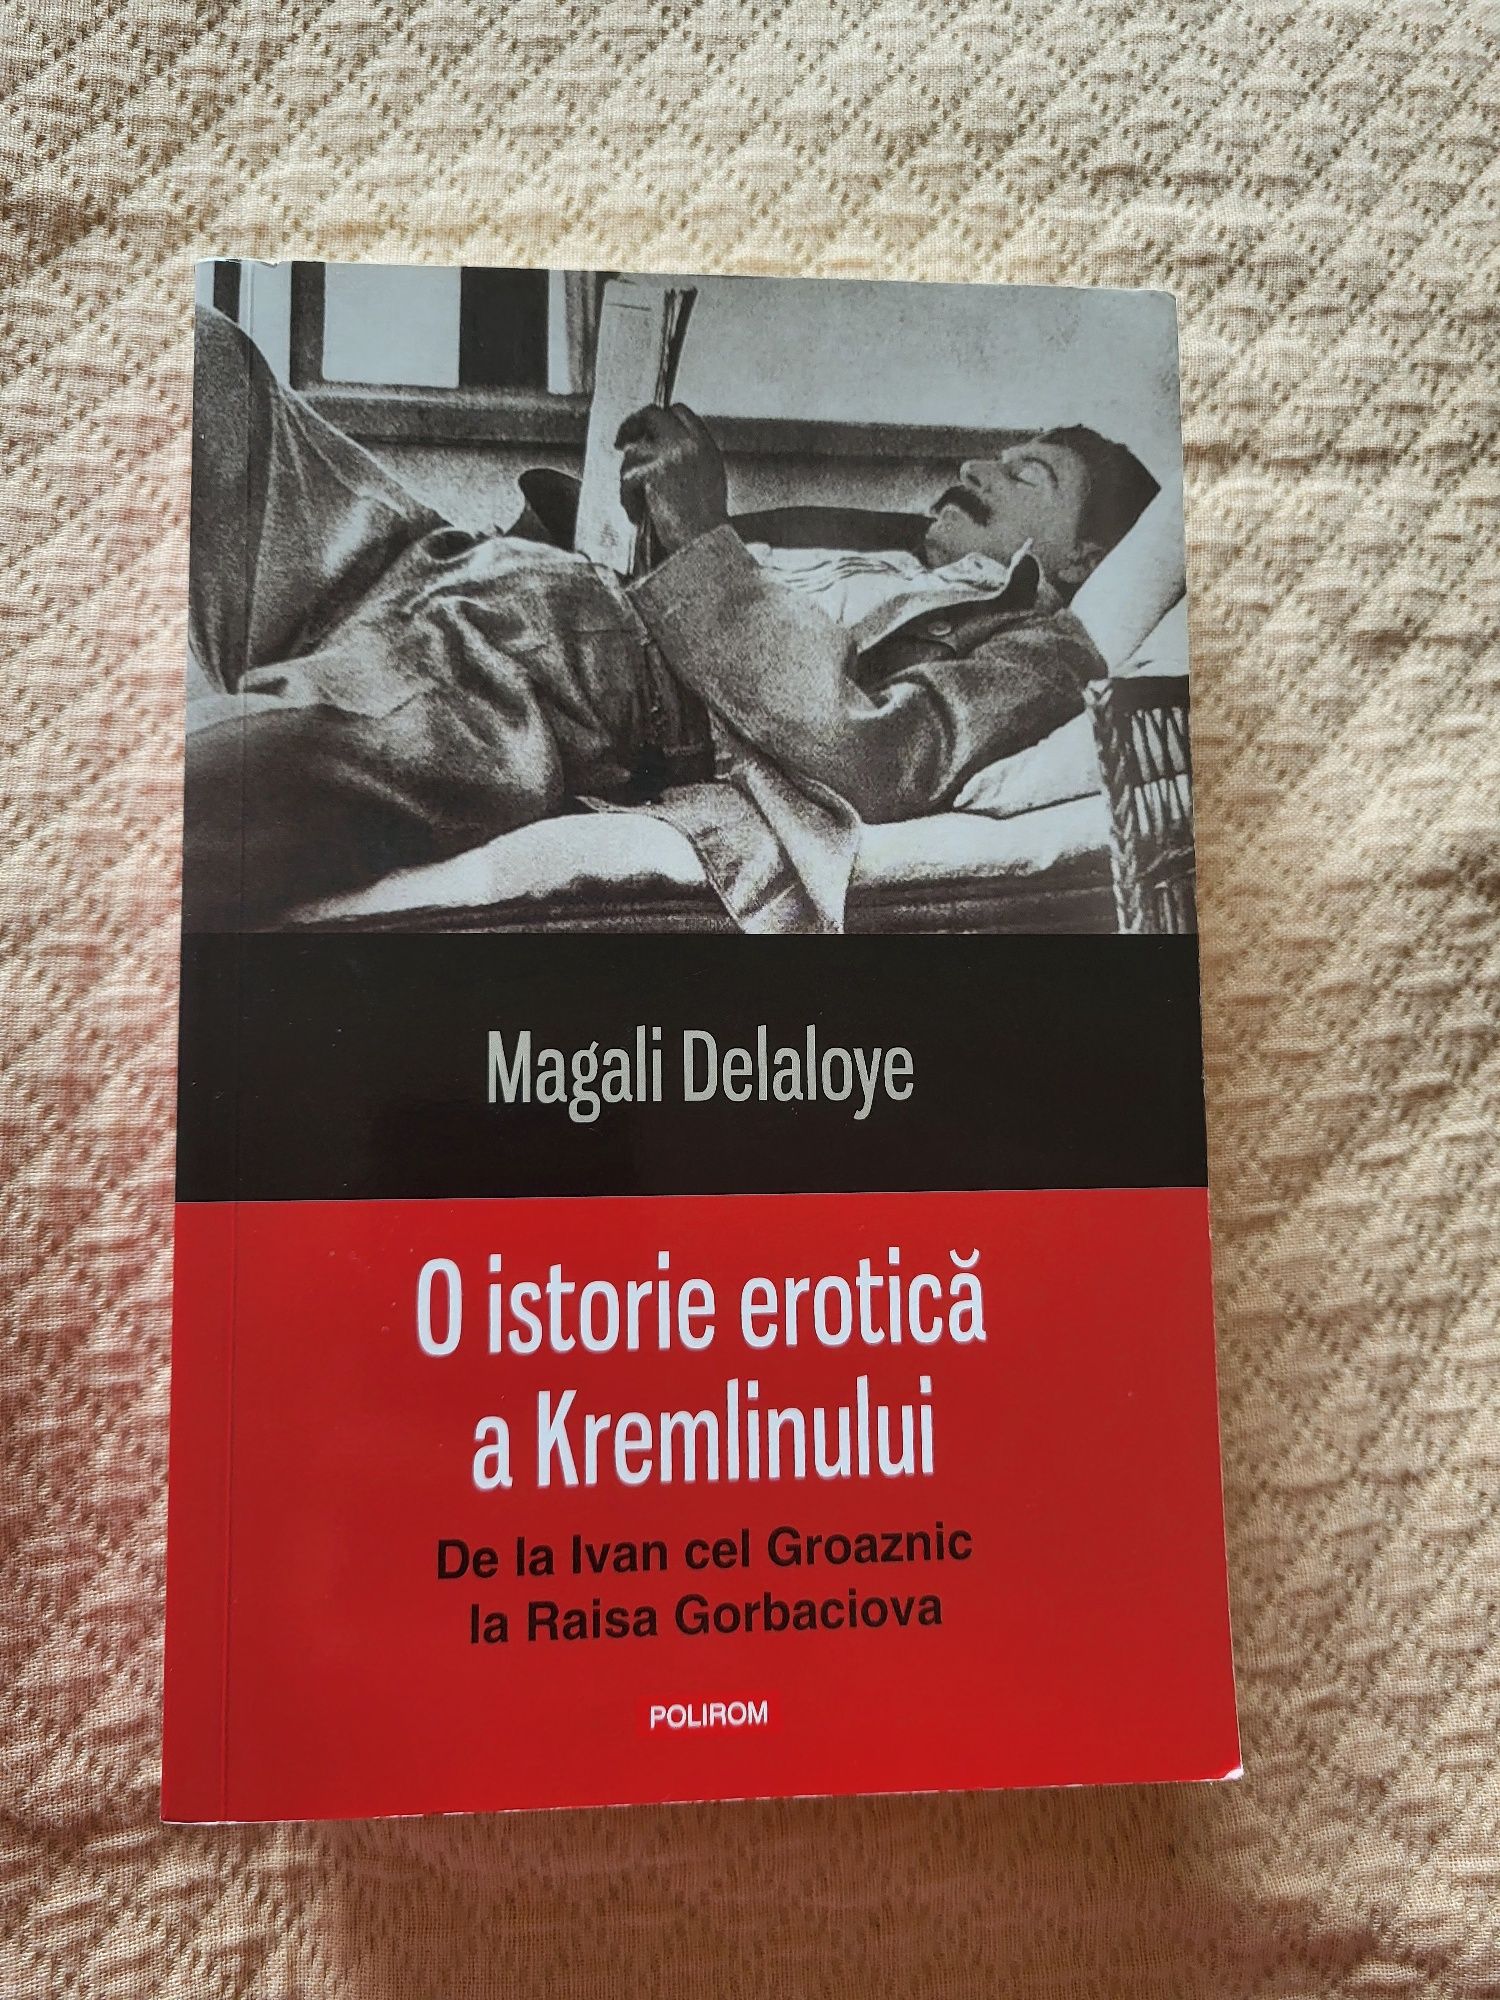 Ofer cartea "O istorie erotică a Kremlinului"